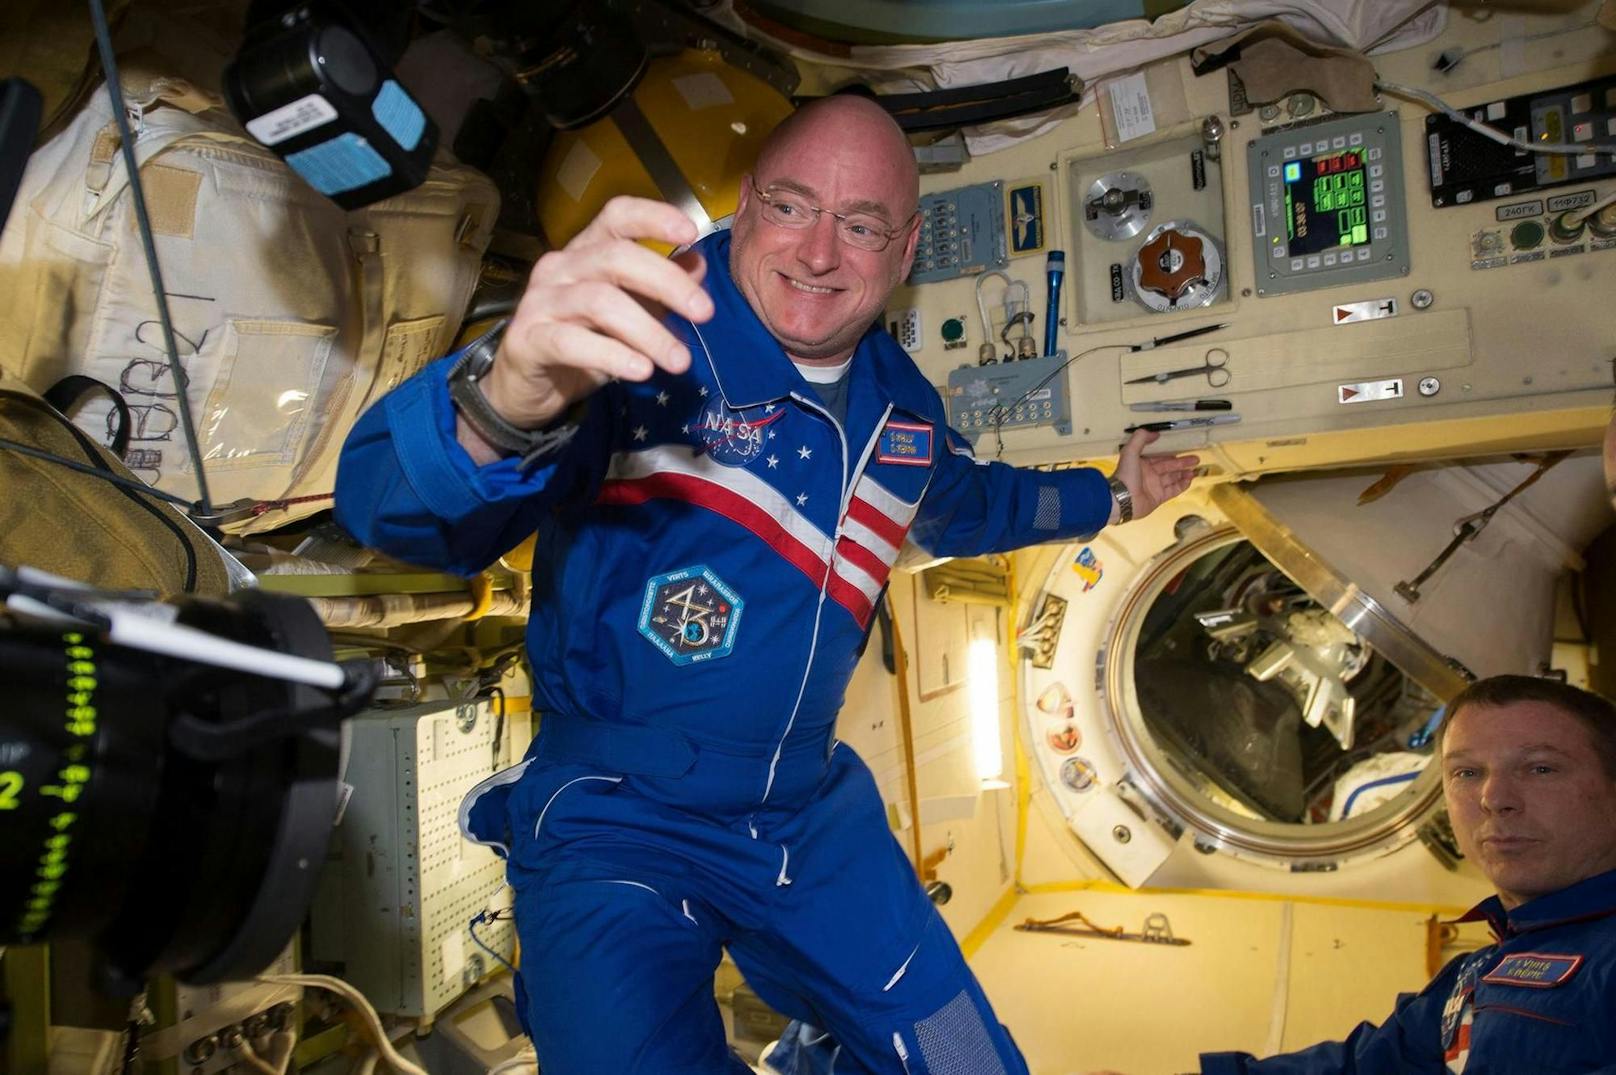 Scott Kelly verbrachte 2015/2016 nonstop 340 Tage auf der ISS im Weltall.